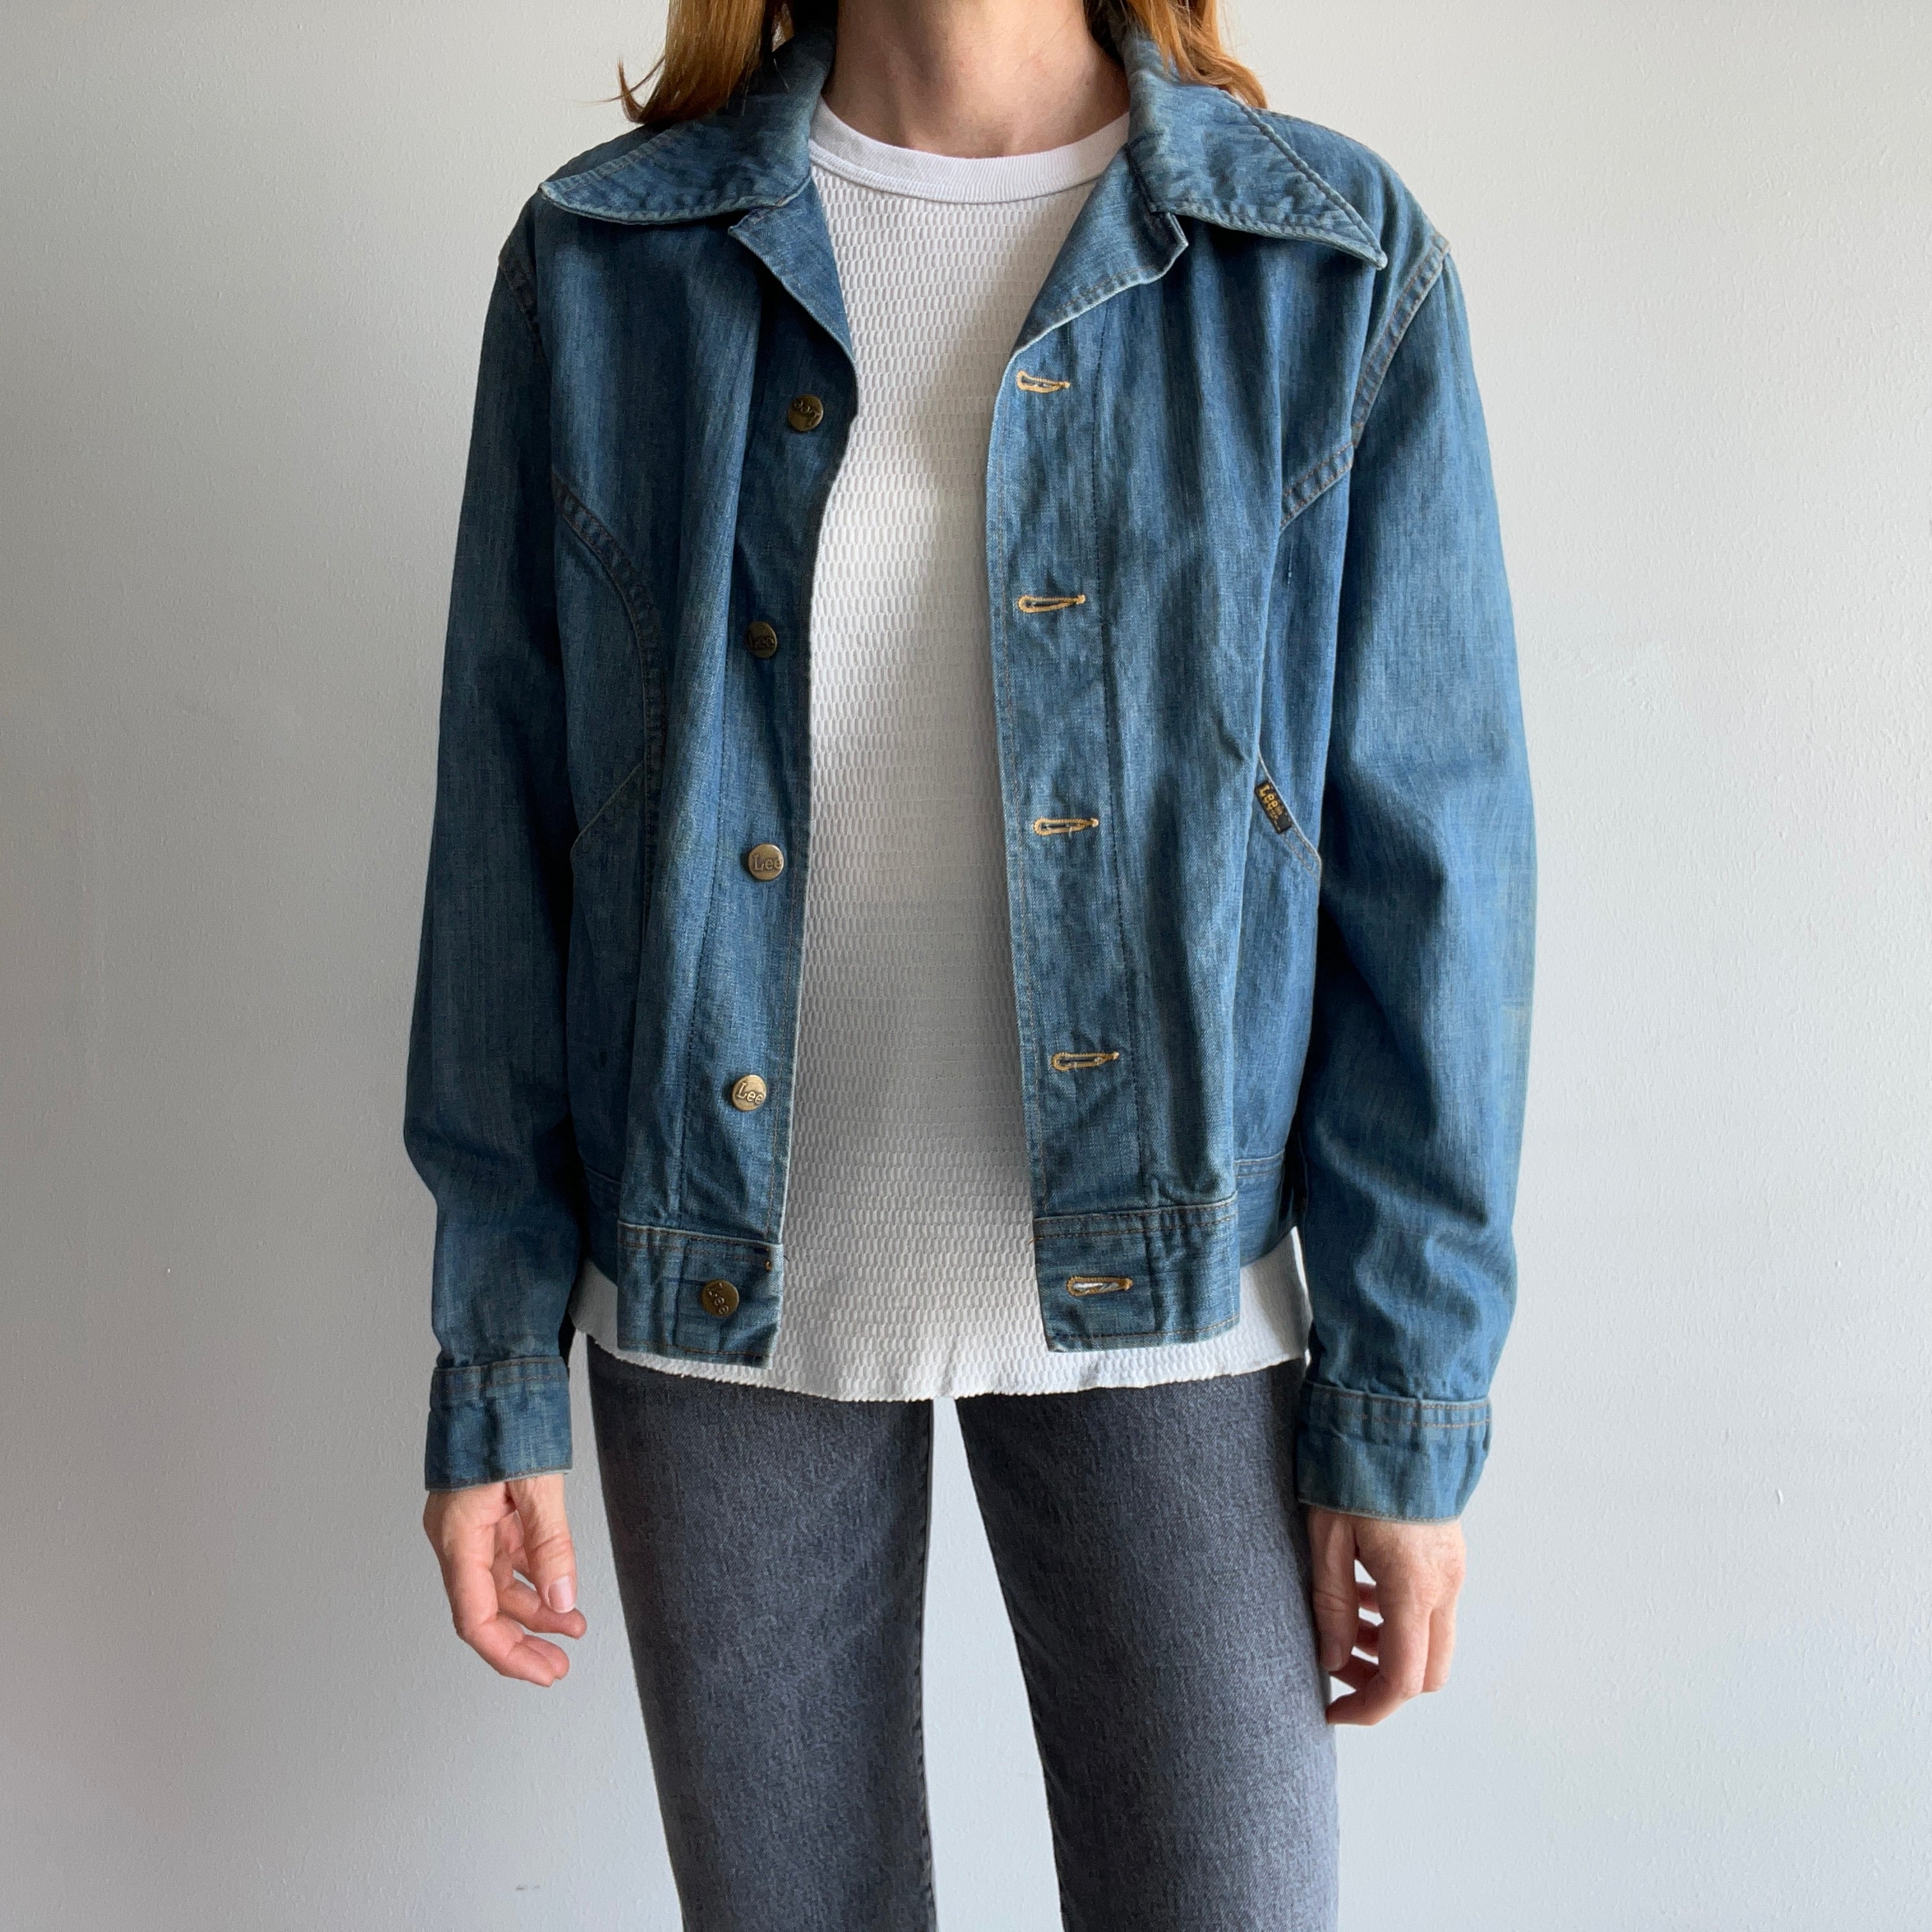 Women's Outerwear | Denim Jackets for Women | Lee Jeans Australia